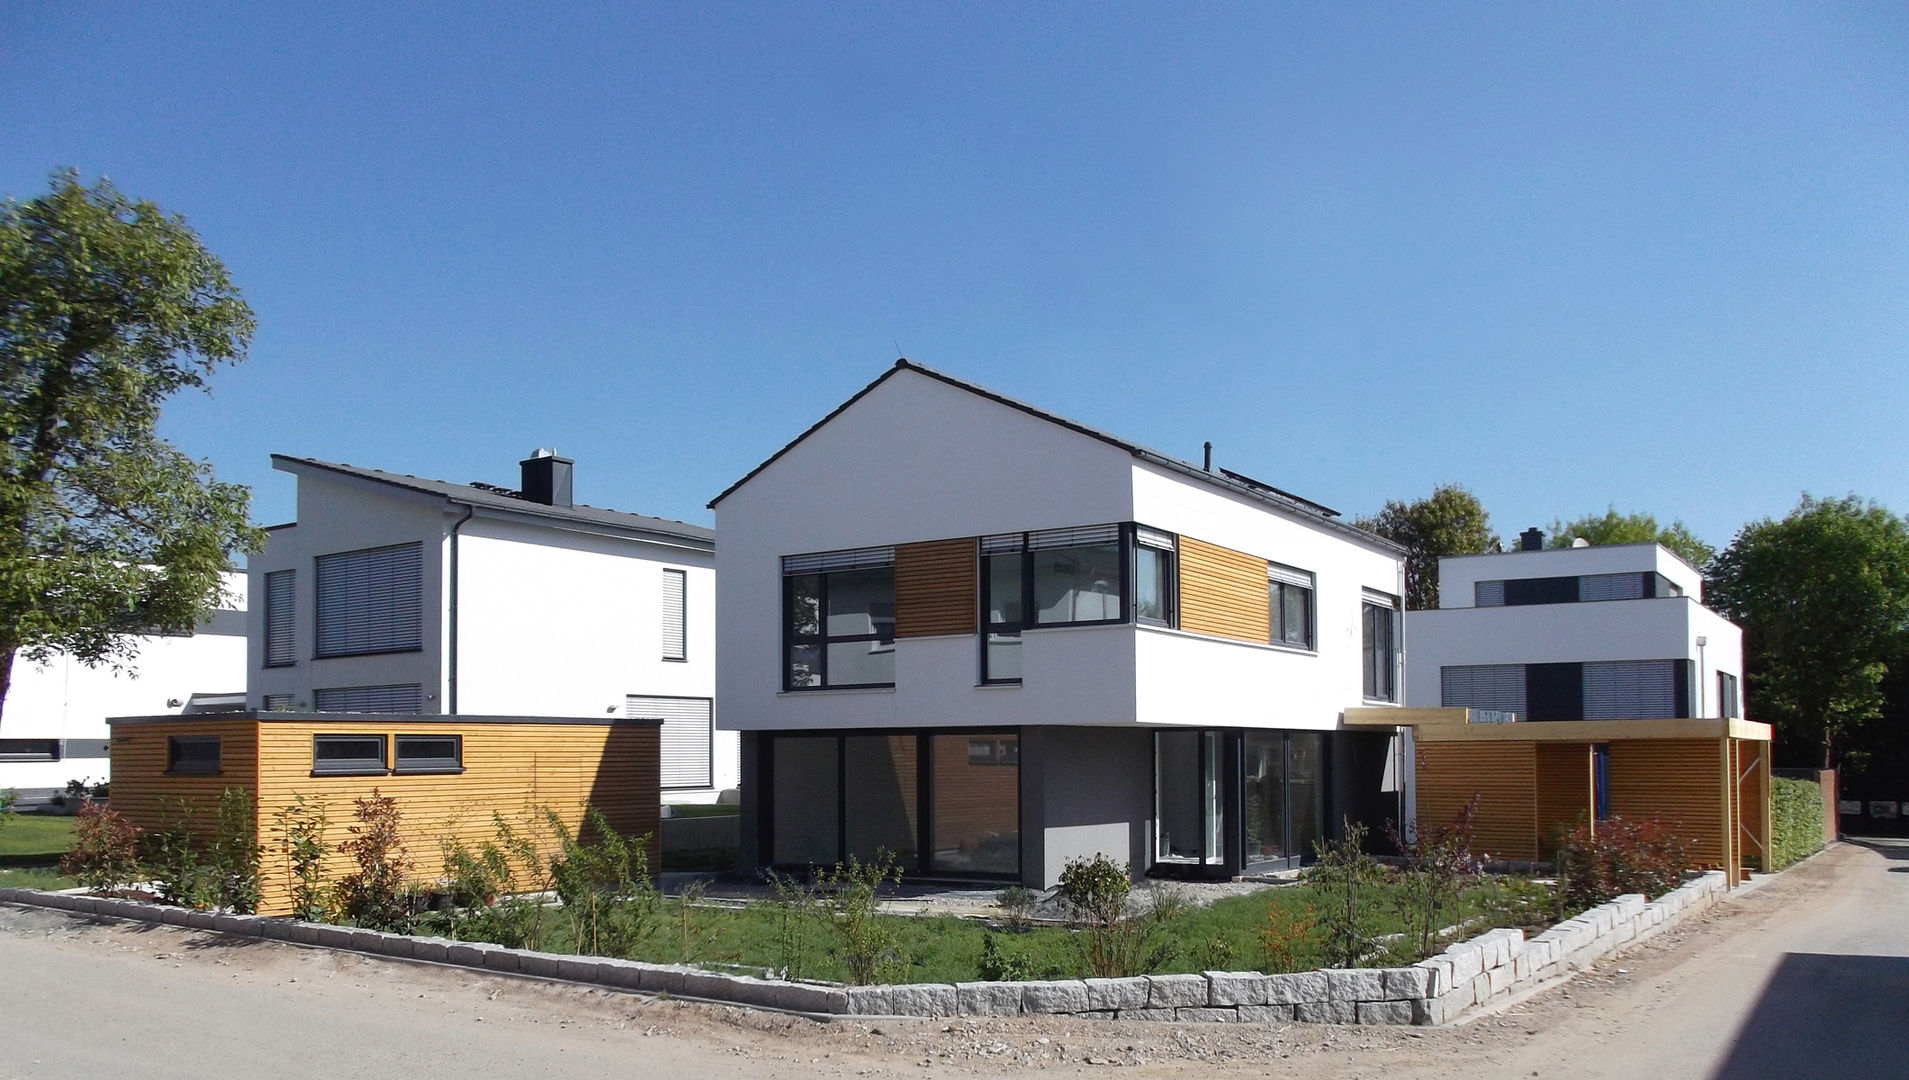 Einfamilienhaus in Steinbach, lauth : van holst architekten lauth : van holst architekten Moderne Häuser